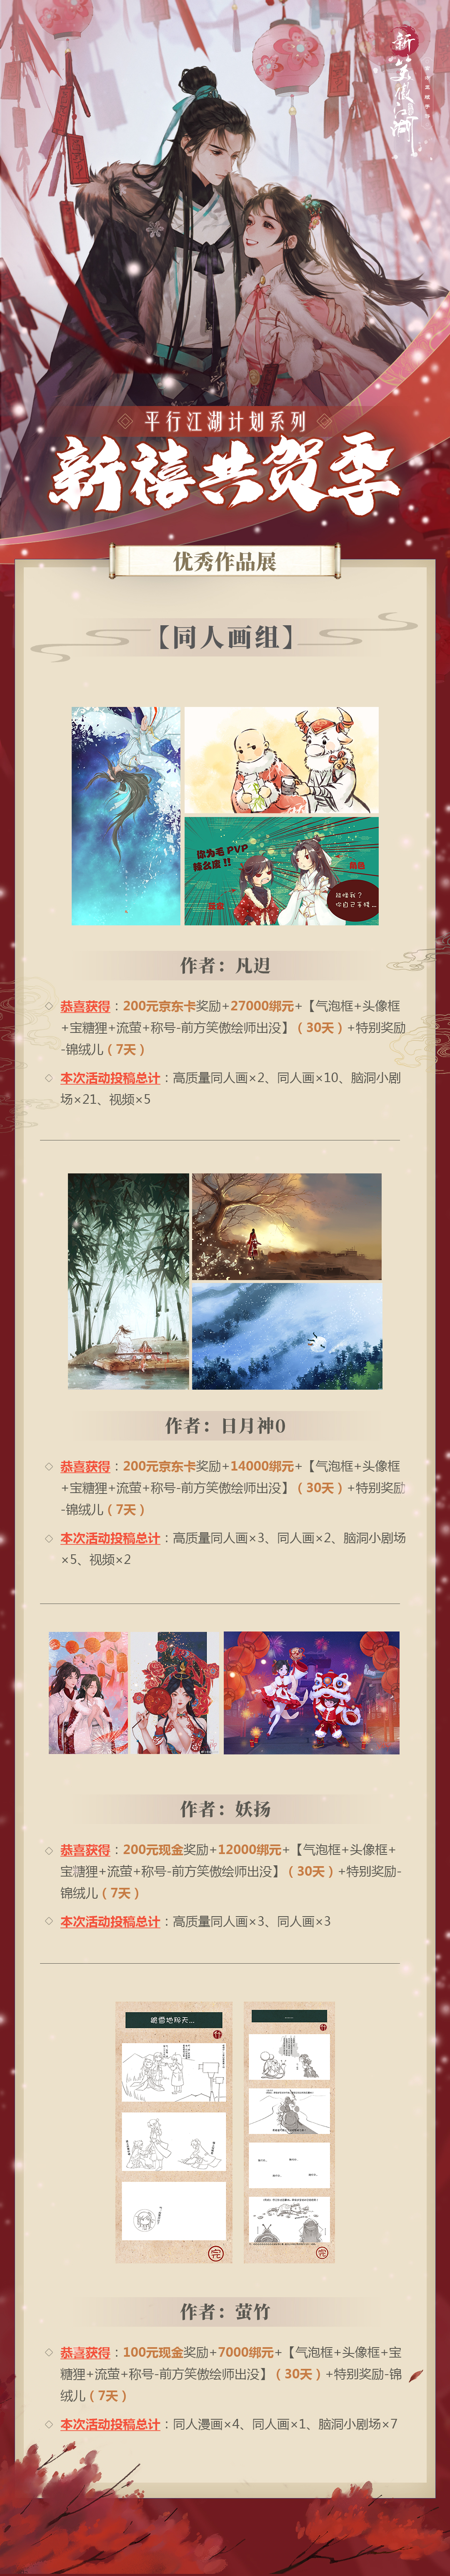 【新春同人活动】平行江湖系列之“新禧共贺季”优秀作品展示